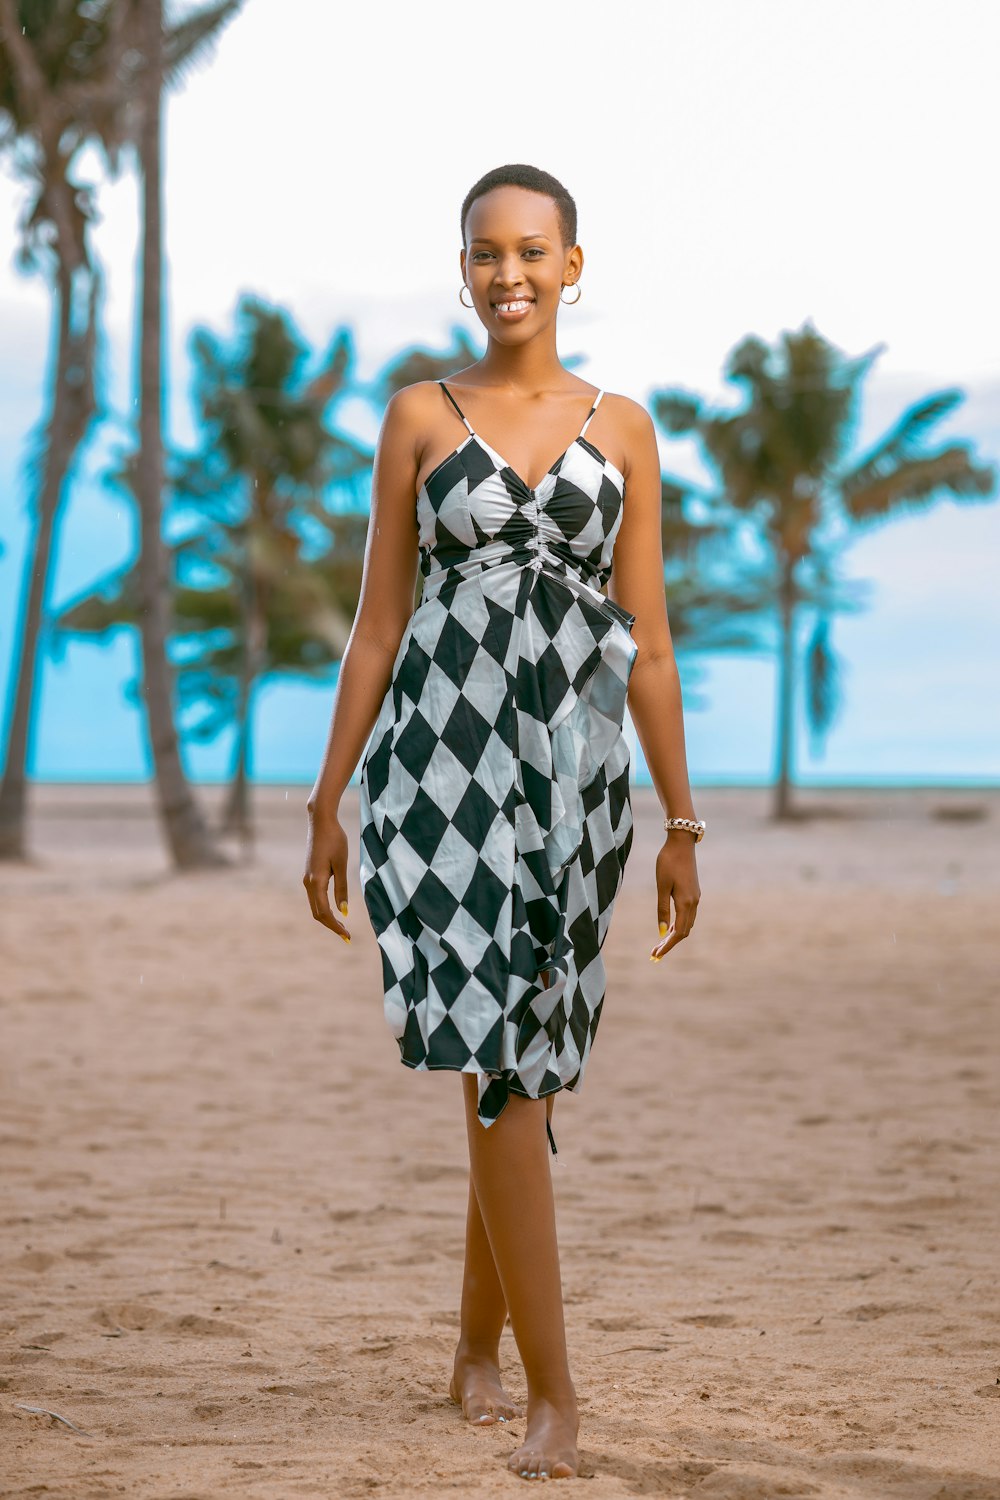 해변에서 체크무늬 드레스를 입은 여자